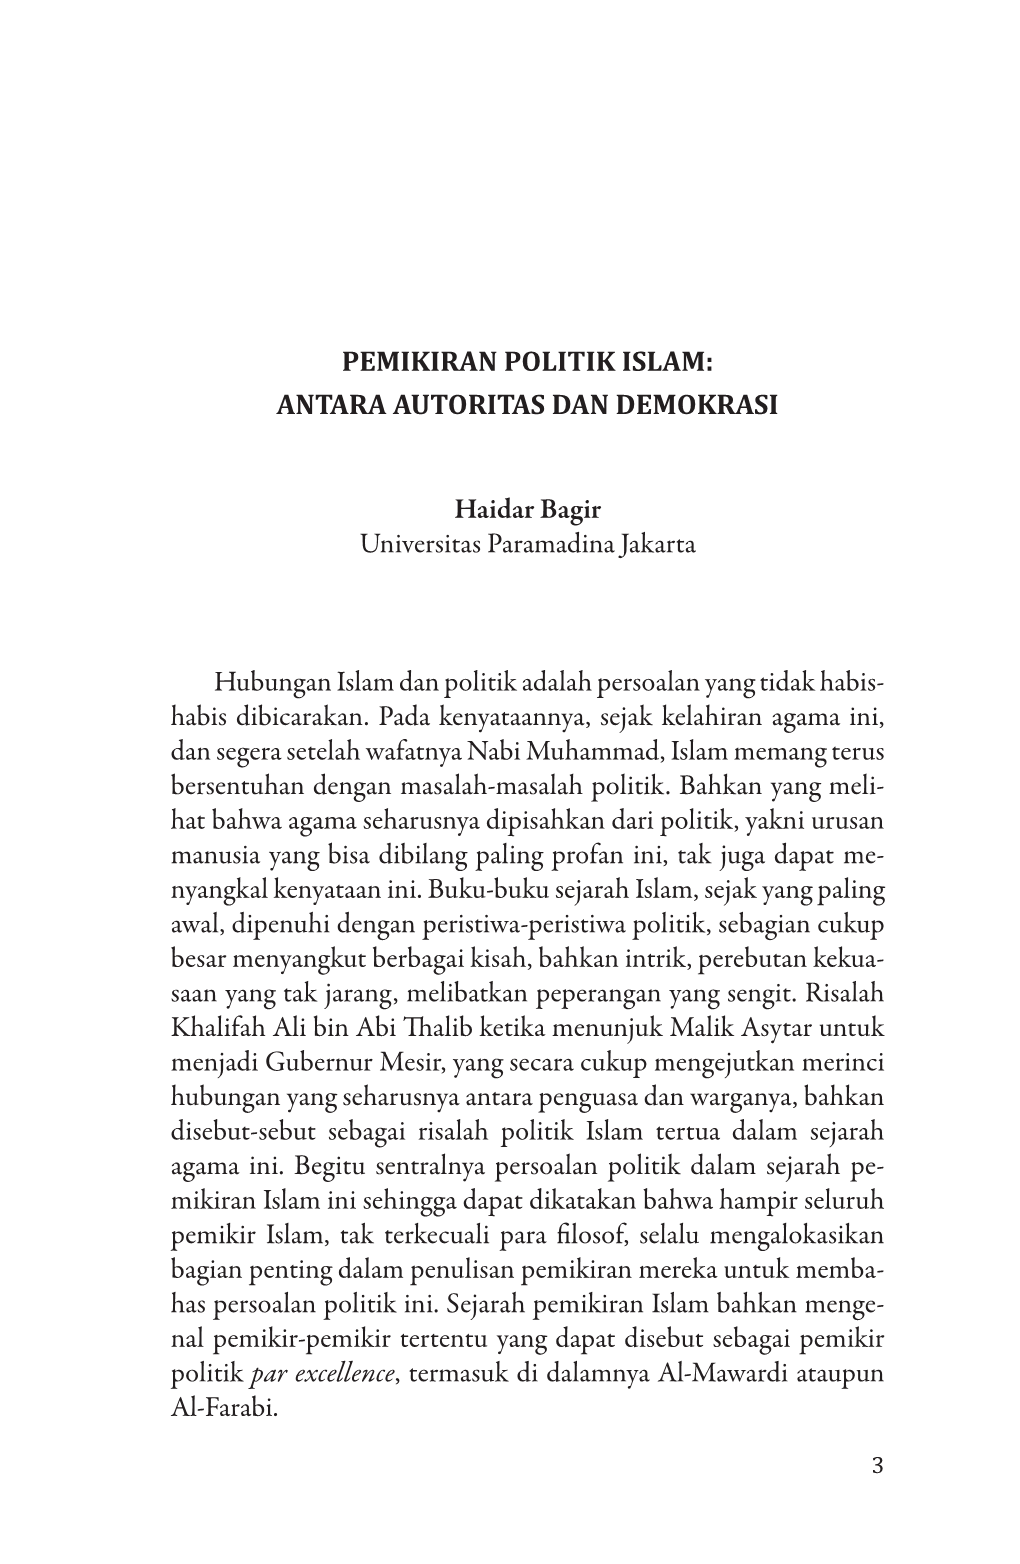 PEMIKIRAN POLITIK ISLAM: ANTARA AUTORITAS DAN DEMOKRASI Haidar Bagir Universitas Paramadina Jakarta Hubungan Islam Dan Politik A